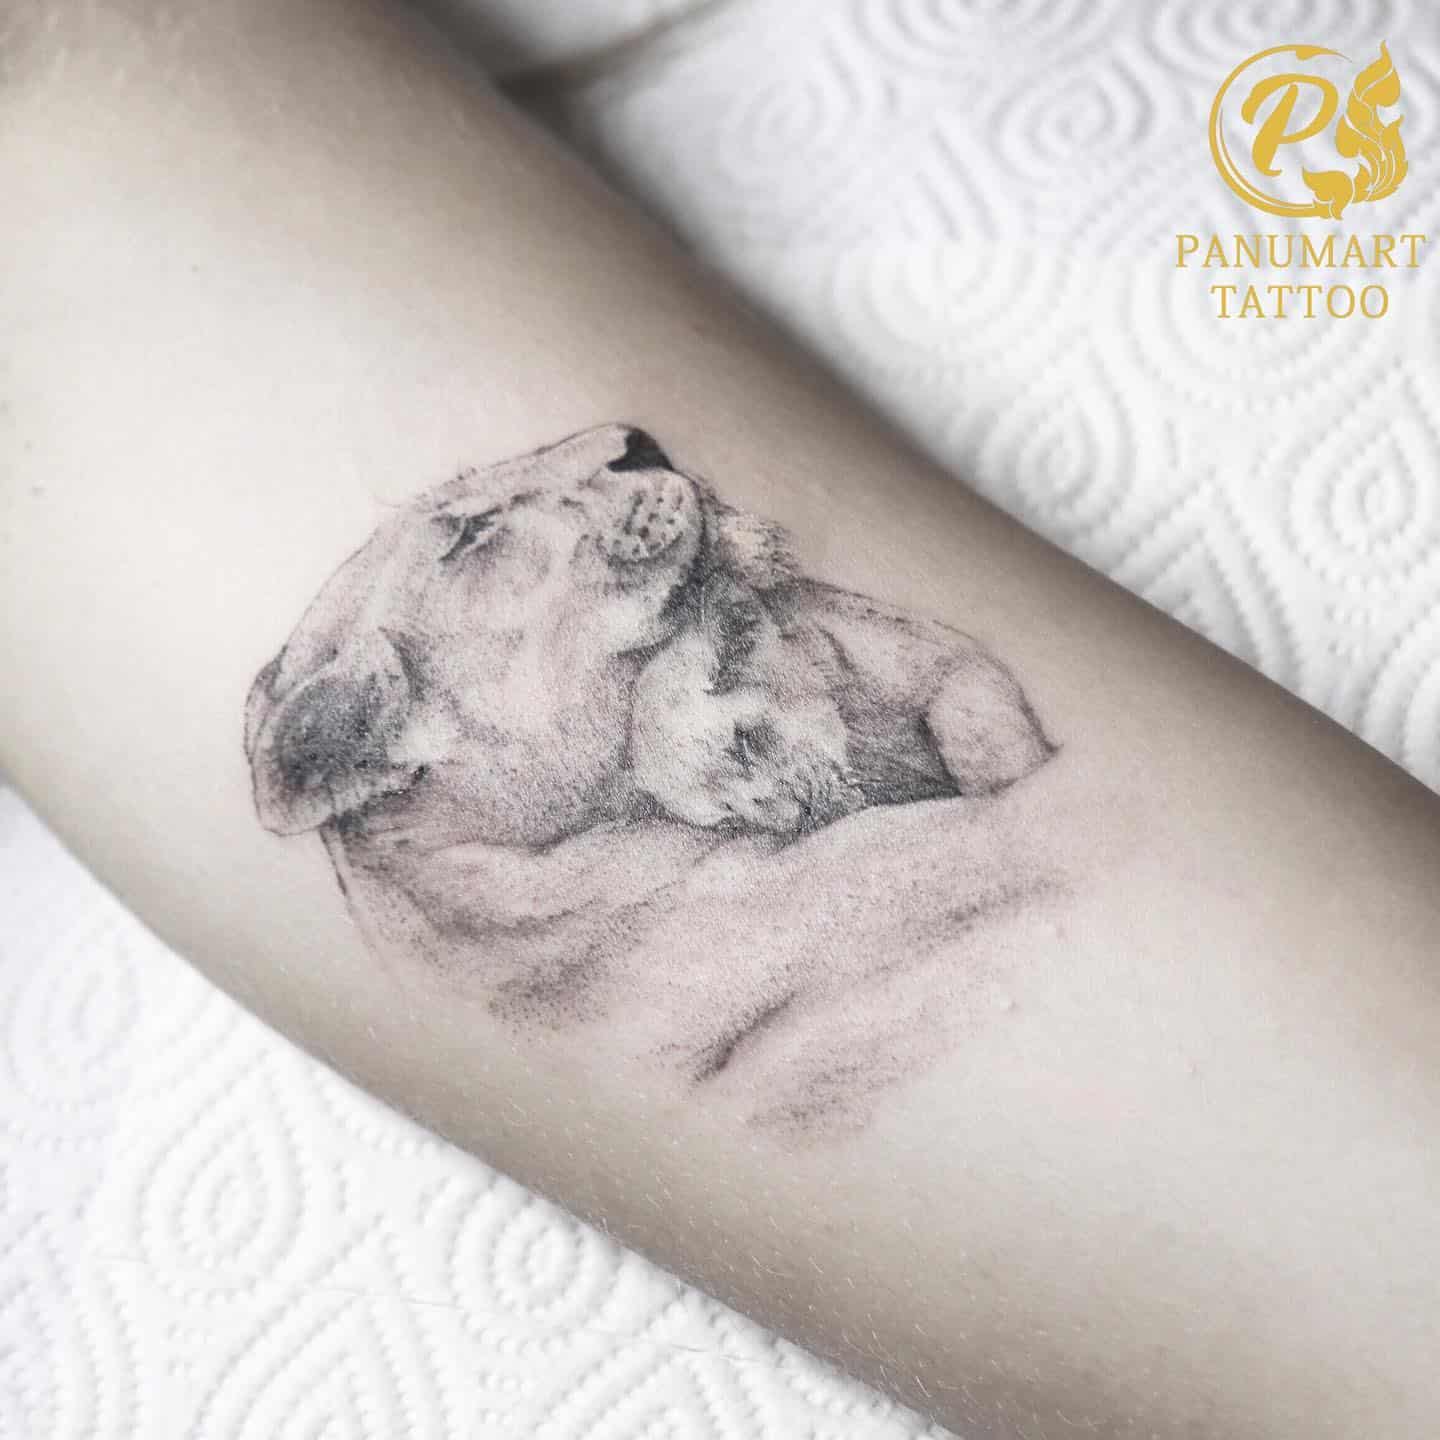 Panda Tattoo Ideas 40